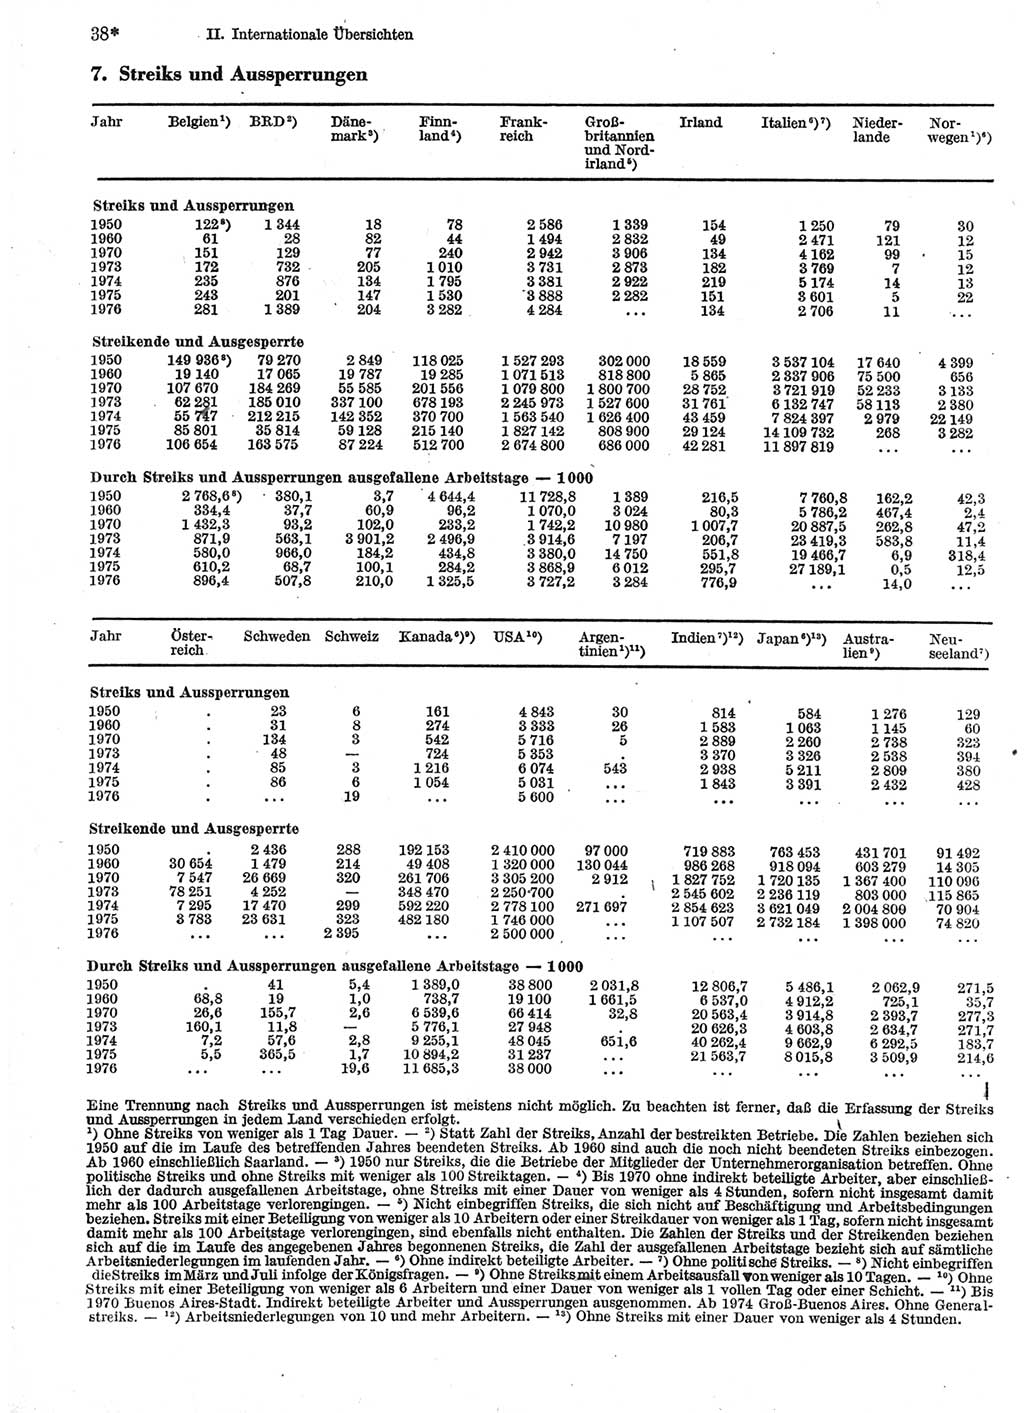 Statistisches Jahrbuch der Deutschen Demokratischen Republik (DDR) 1978, Seite 38 (Stat. Jb. DDR 1978, S. 38)